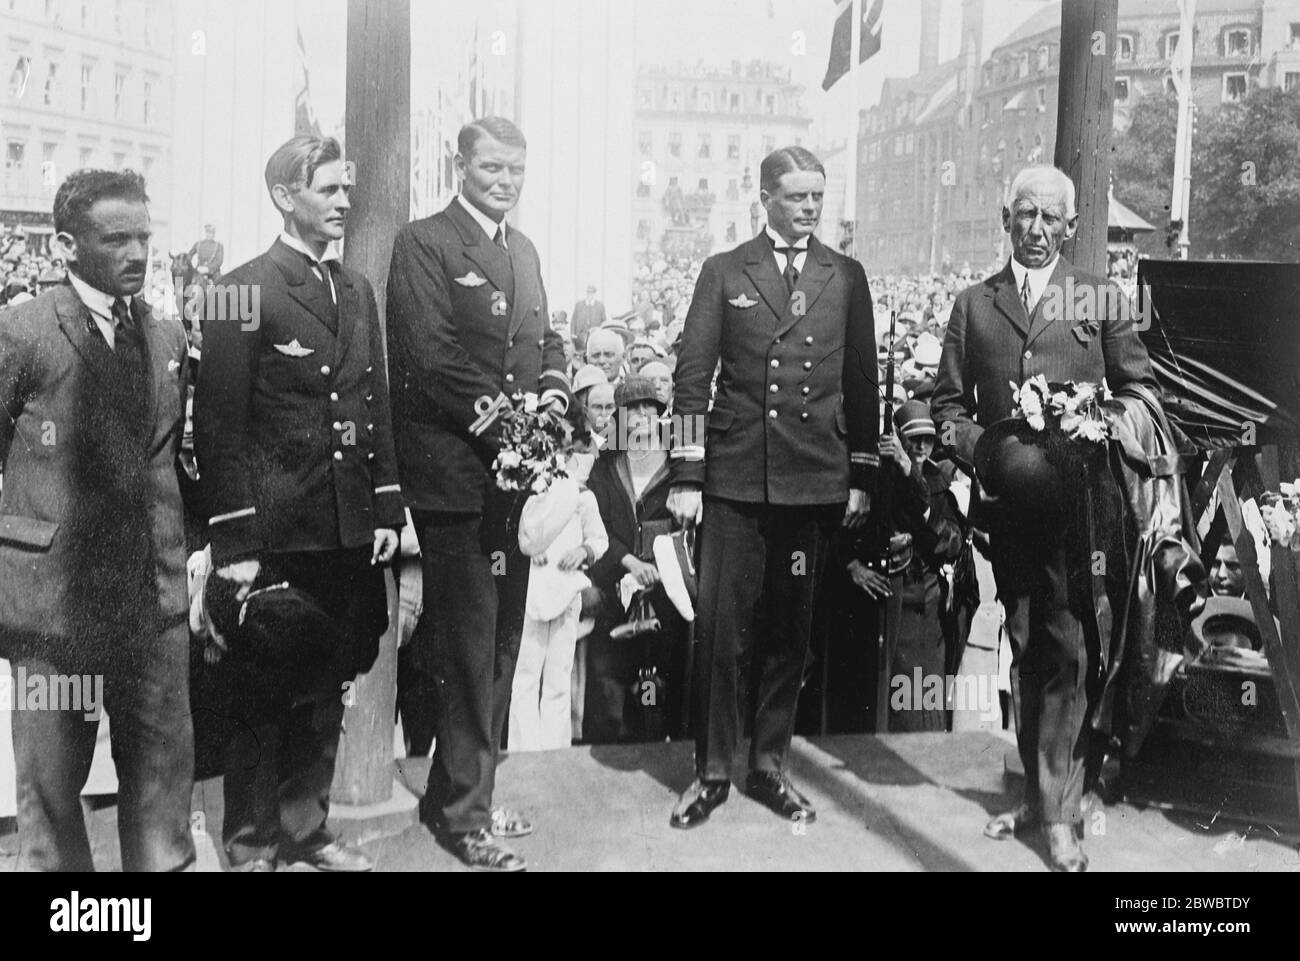 Il Roald amundsen e arrivato a Oslo, il ricevimento ufficiale sulla banchina. Da sinistra a destra Capitano Roald Amundsen , Dietrichson , Riiser Larsen , Omdal , Feucht 7 luglio 1925 Foto Stock